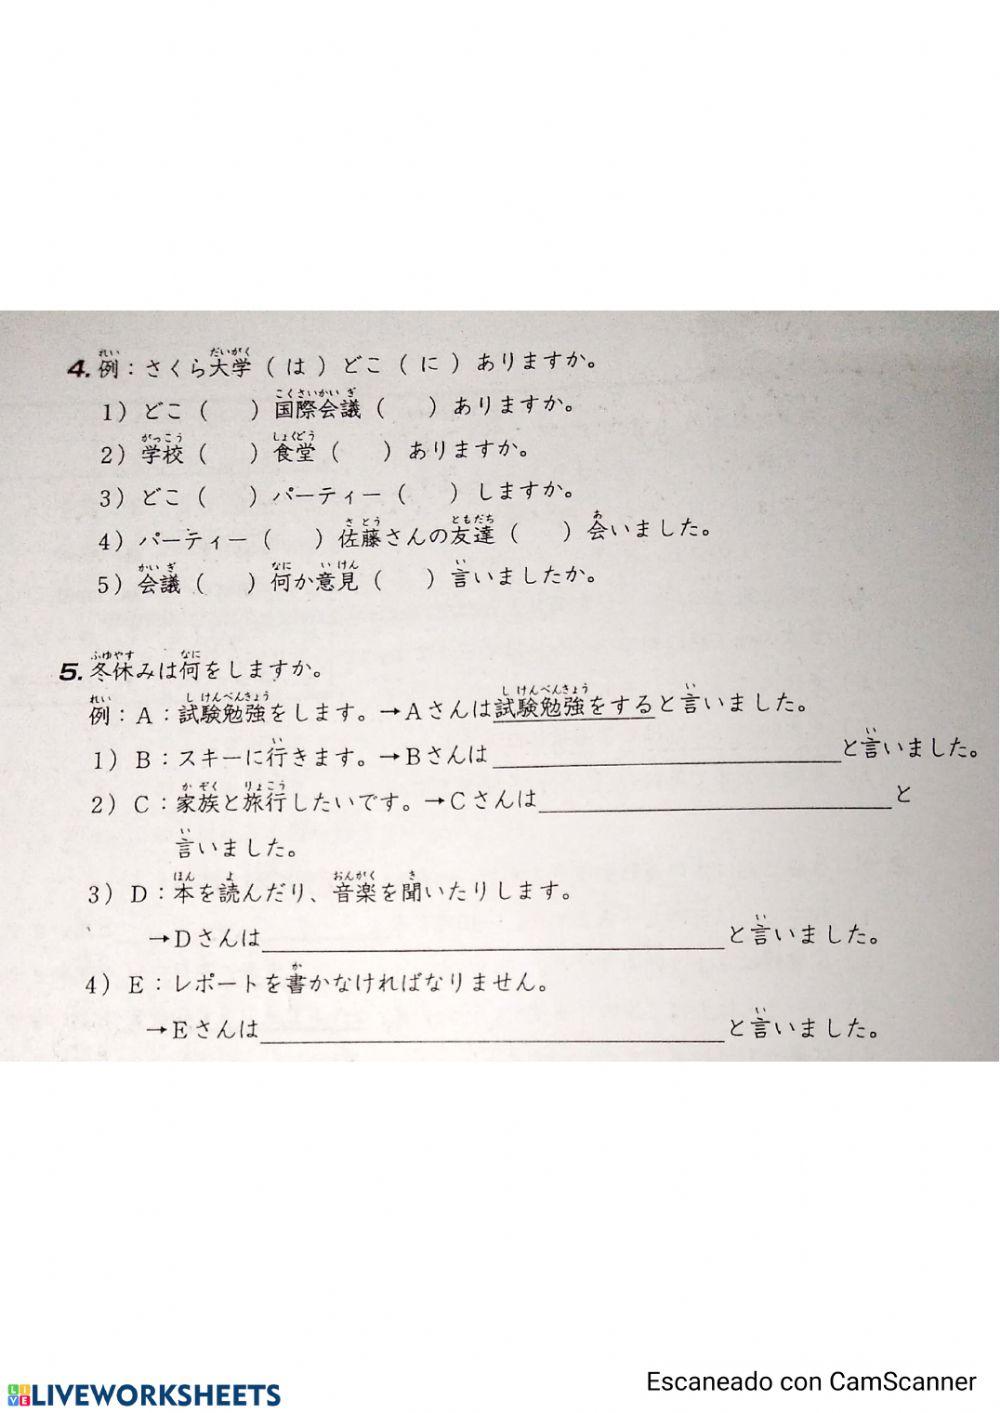 みんなの日本語第21課問題集